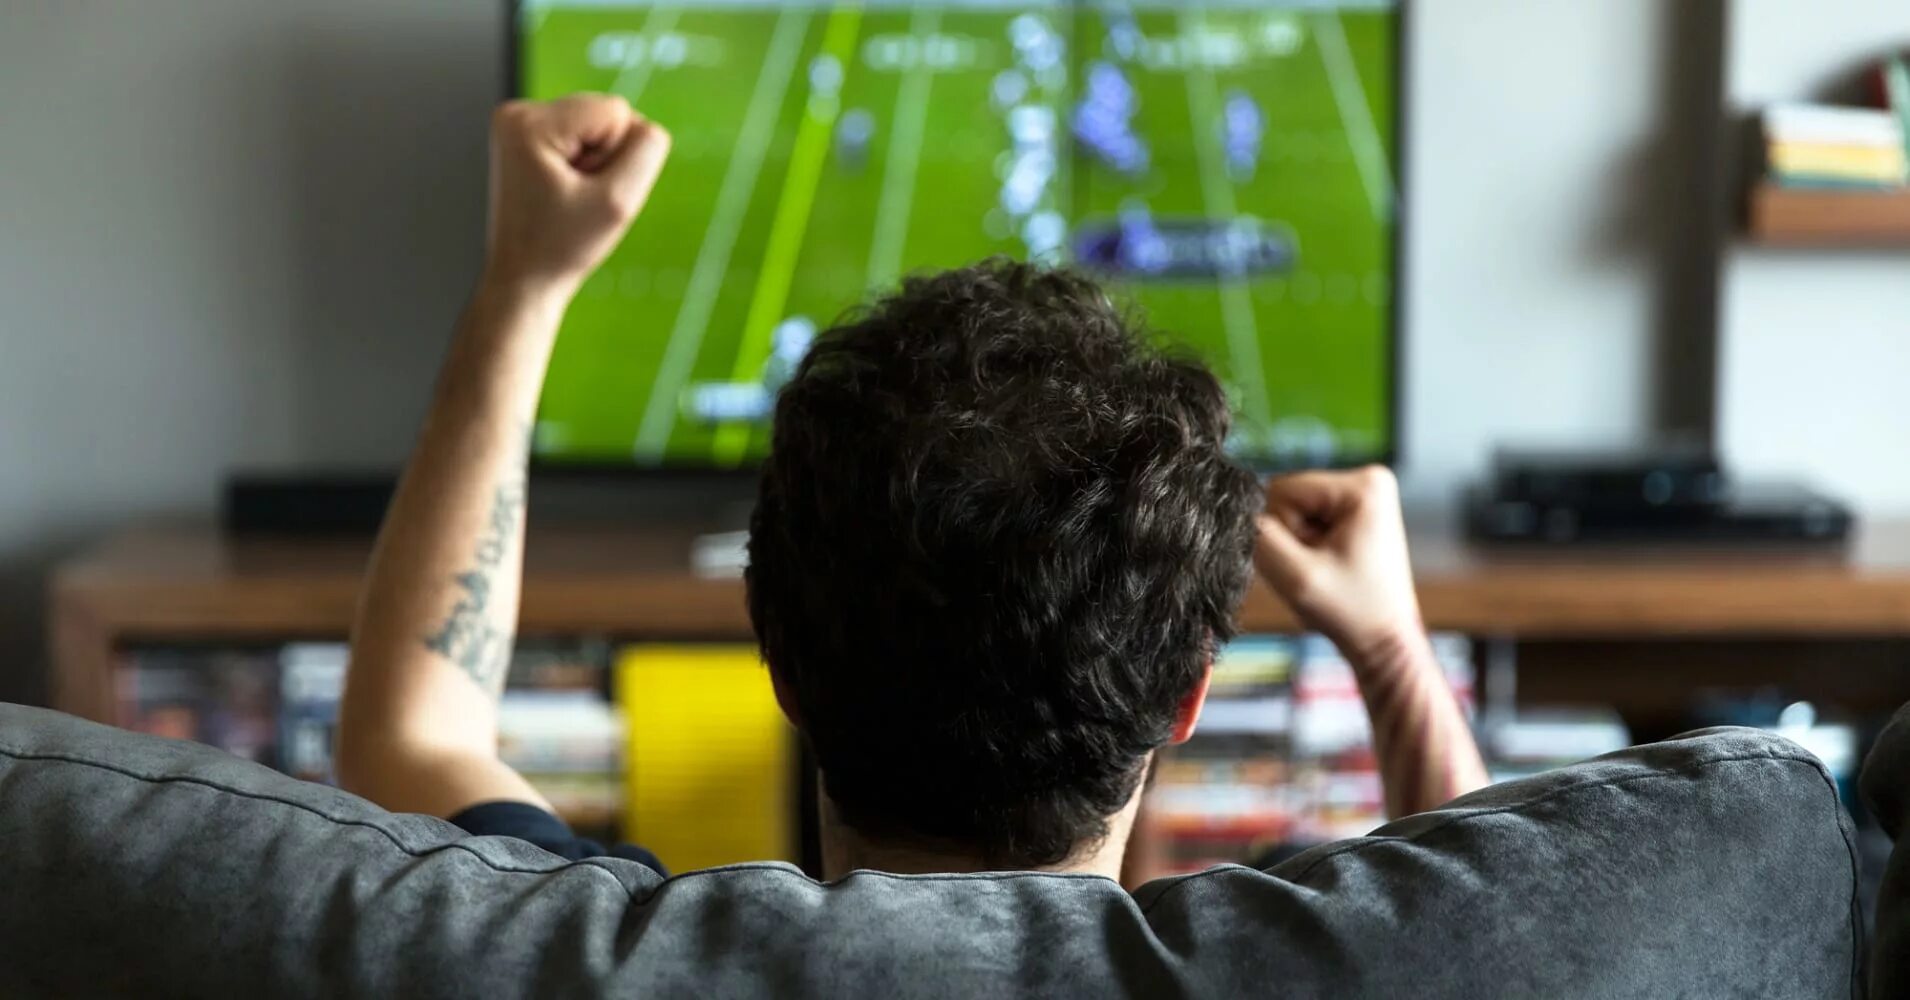 Телевизор смотрим футбол. Футбол по телевизору. Человек телевизор. Человек перед телевизором. Телевизор футбол.